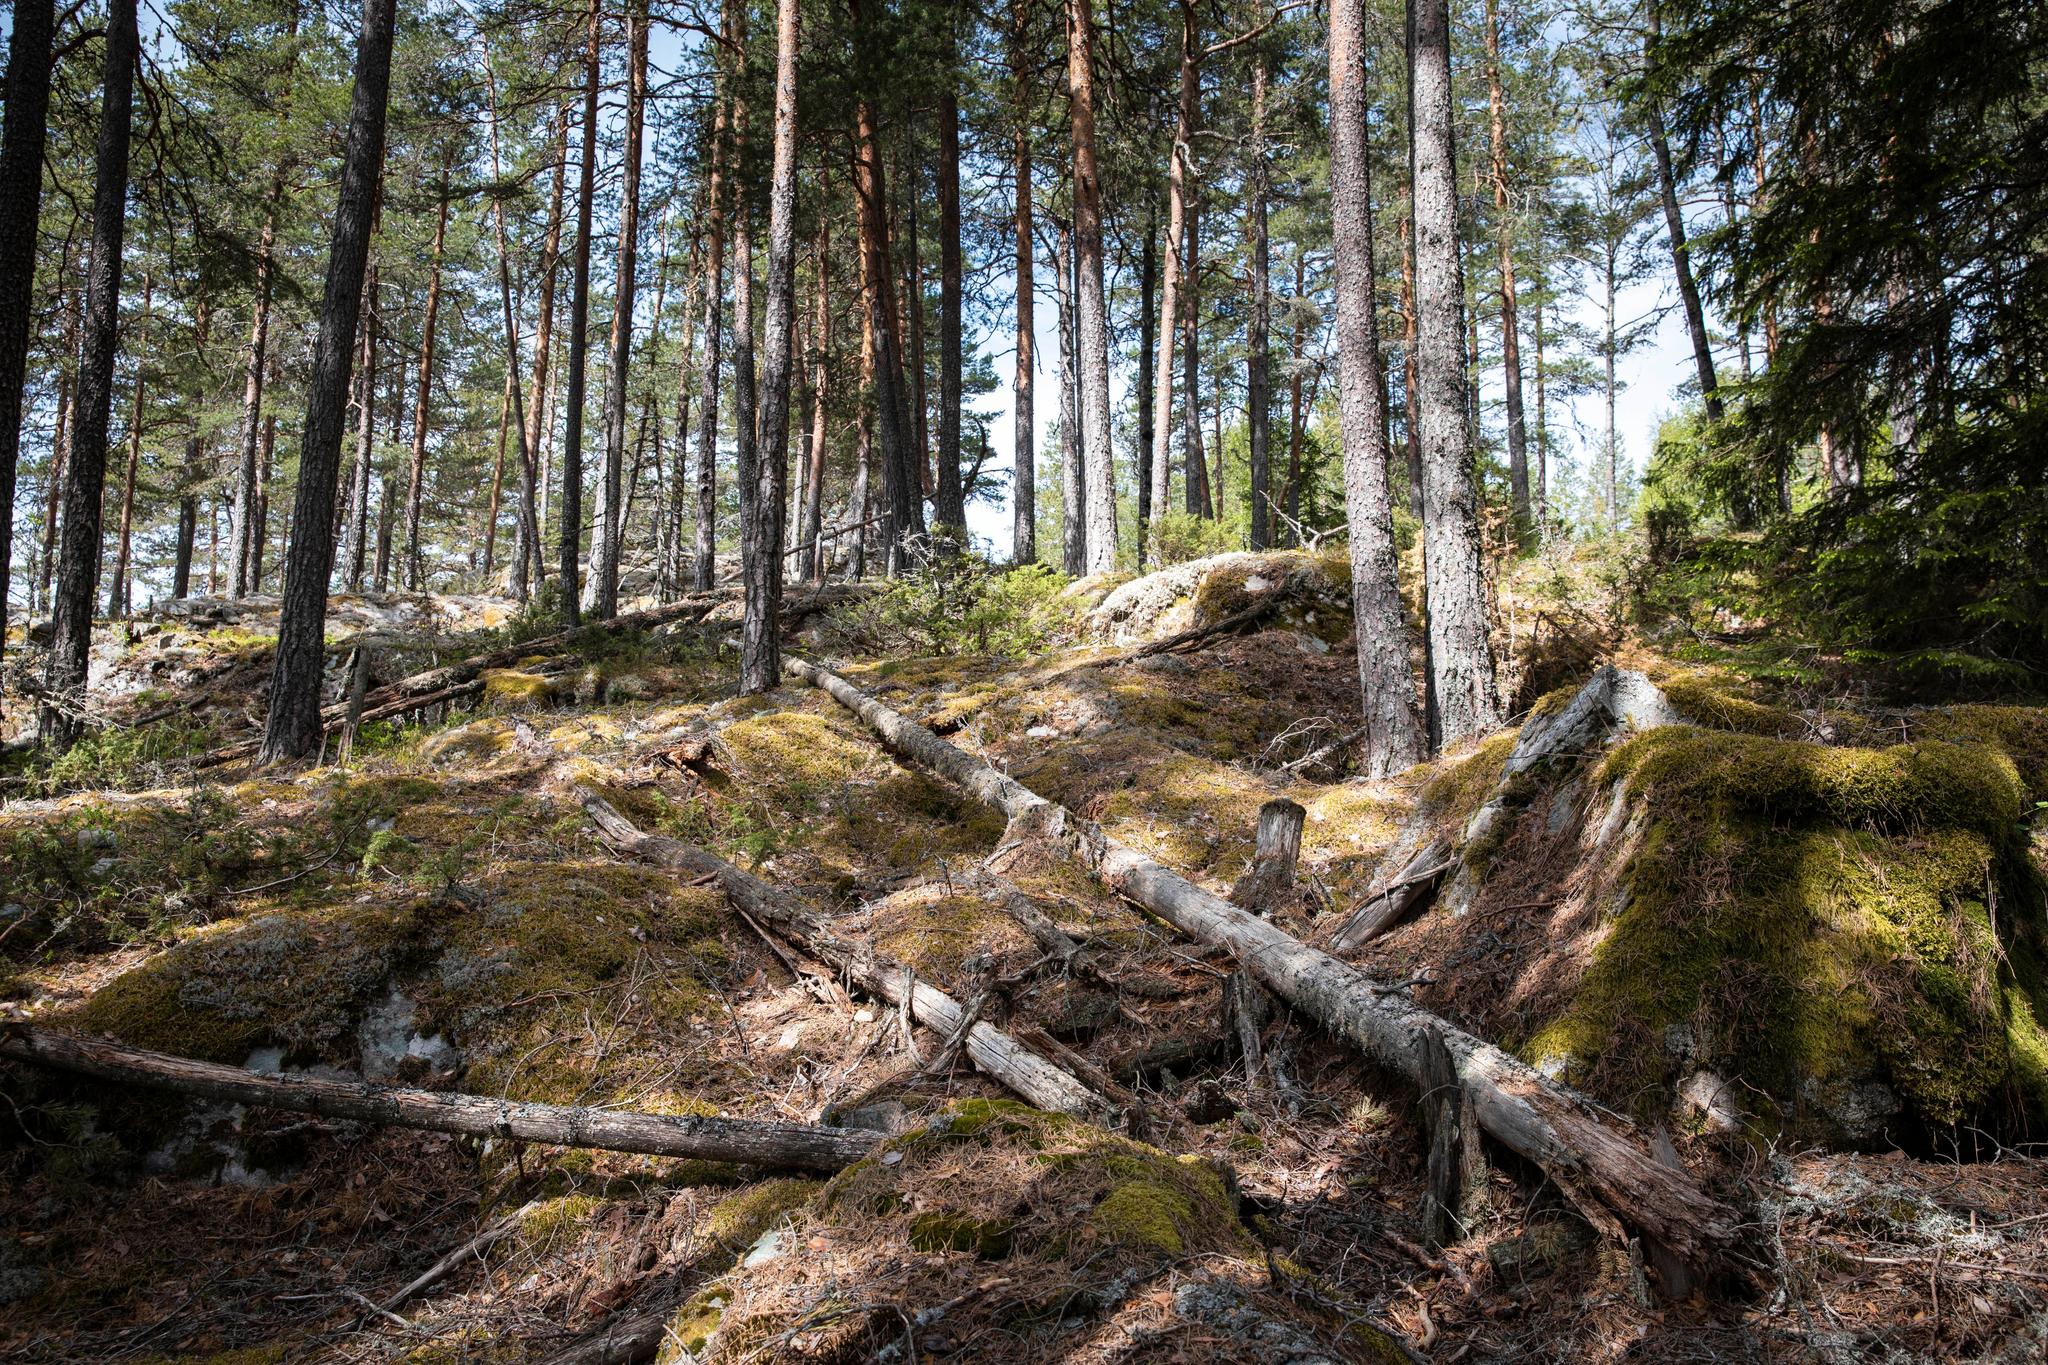 Fortsatt er det nye gammelskog rundt innsjøen Follsjå. Skogeierne lover å kartlegge bedre, men Naturvernforbundet frykter at kartleggingen ikke blir god nok fordi skogbruket selv gjør jobben.